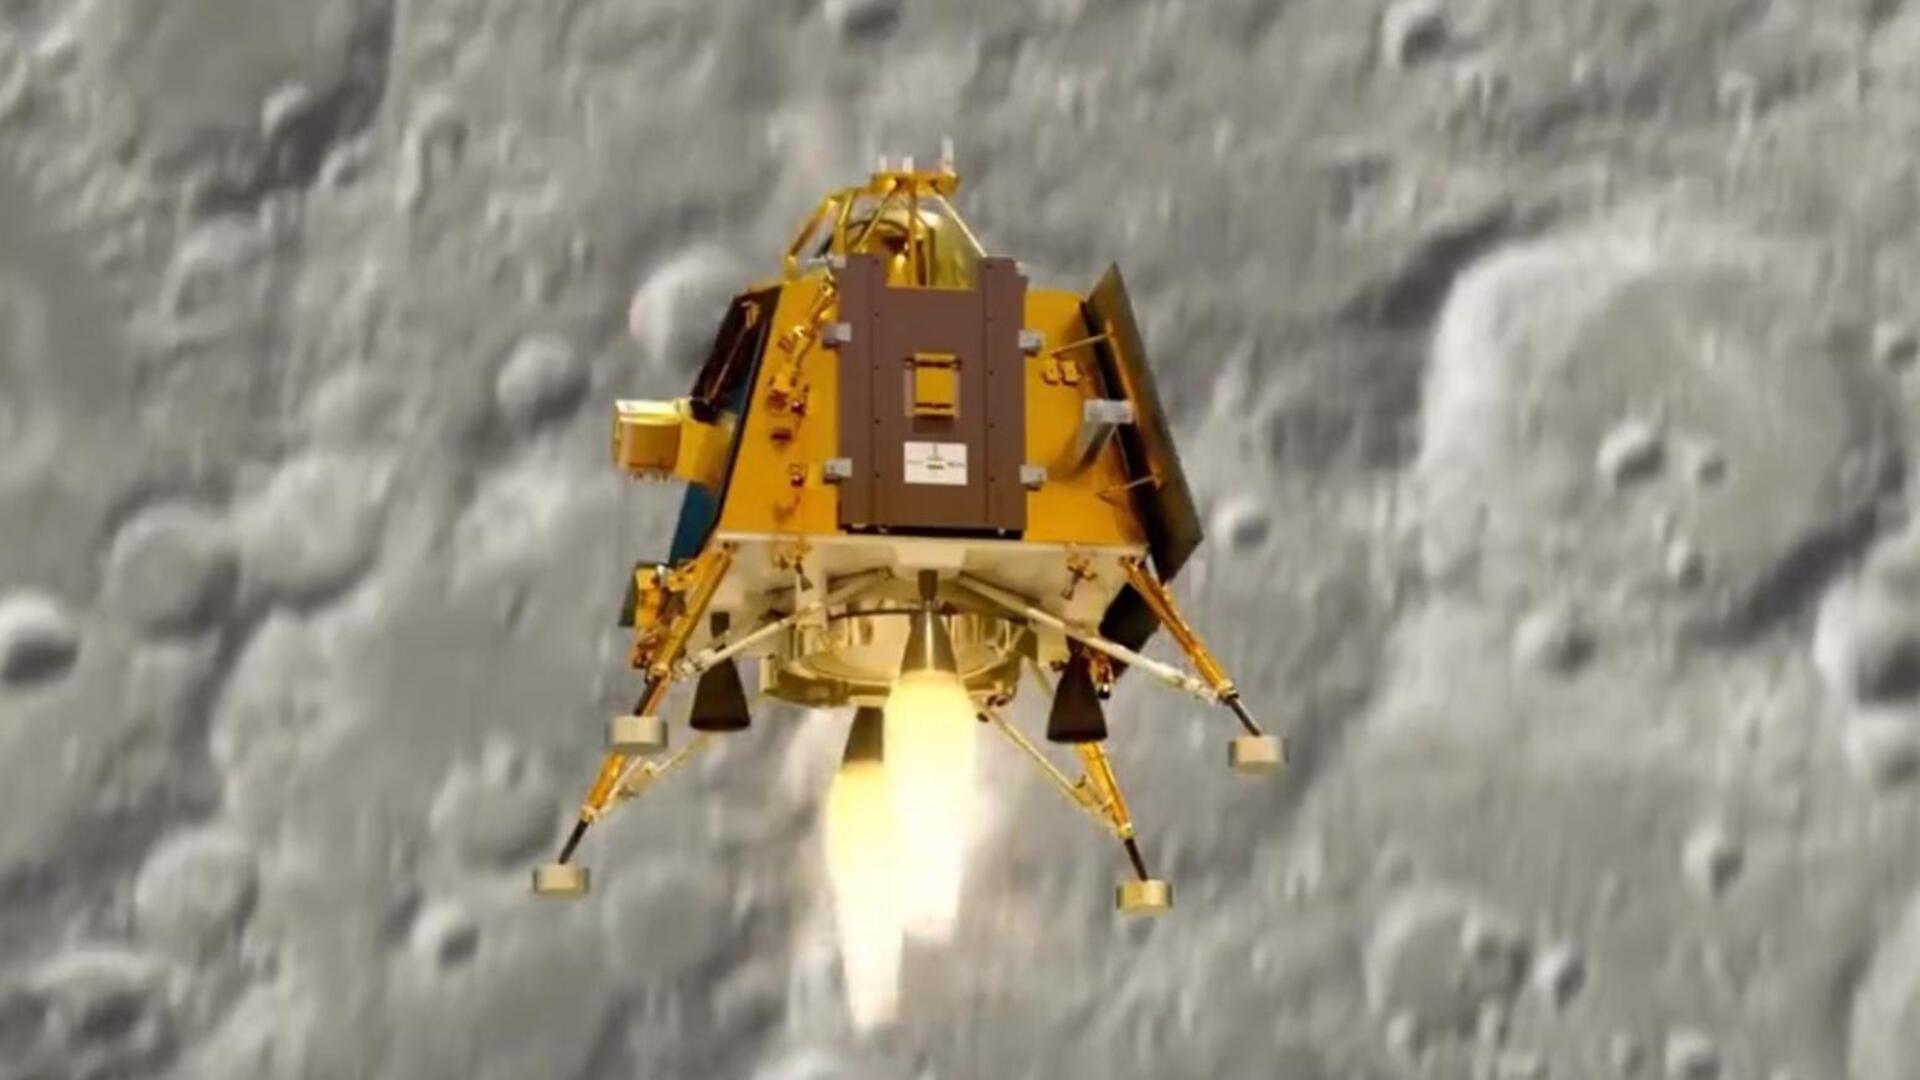 चंद्रयान-3: विक्रम लैंडर कल चांद पर करेगा लैंड, जानिए कब और कैसे देखें लैंडिंग 